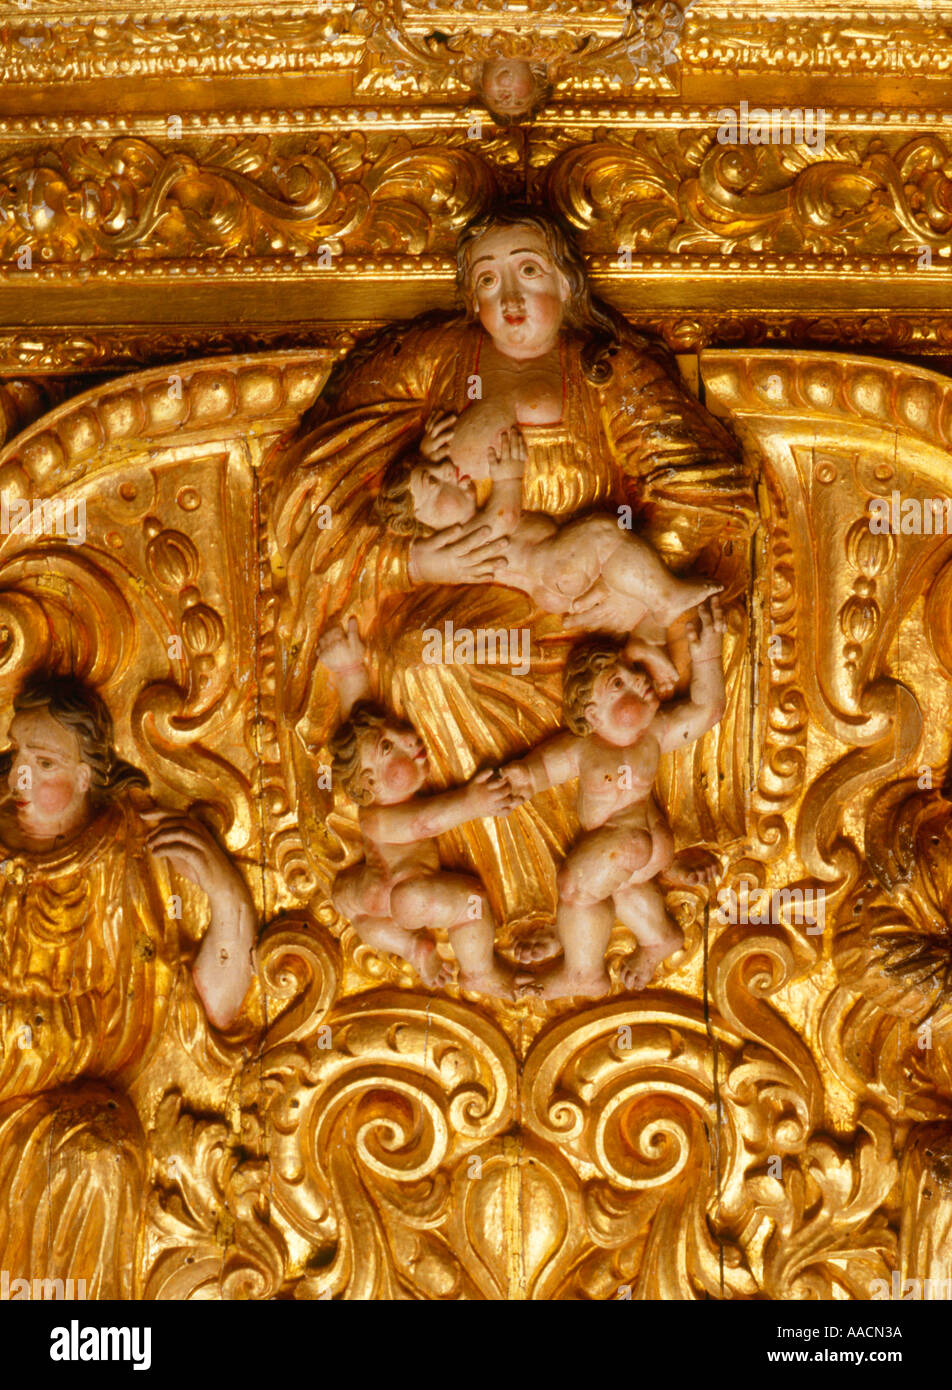 La sculpture baroque au Portugal Banque D'Images